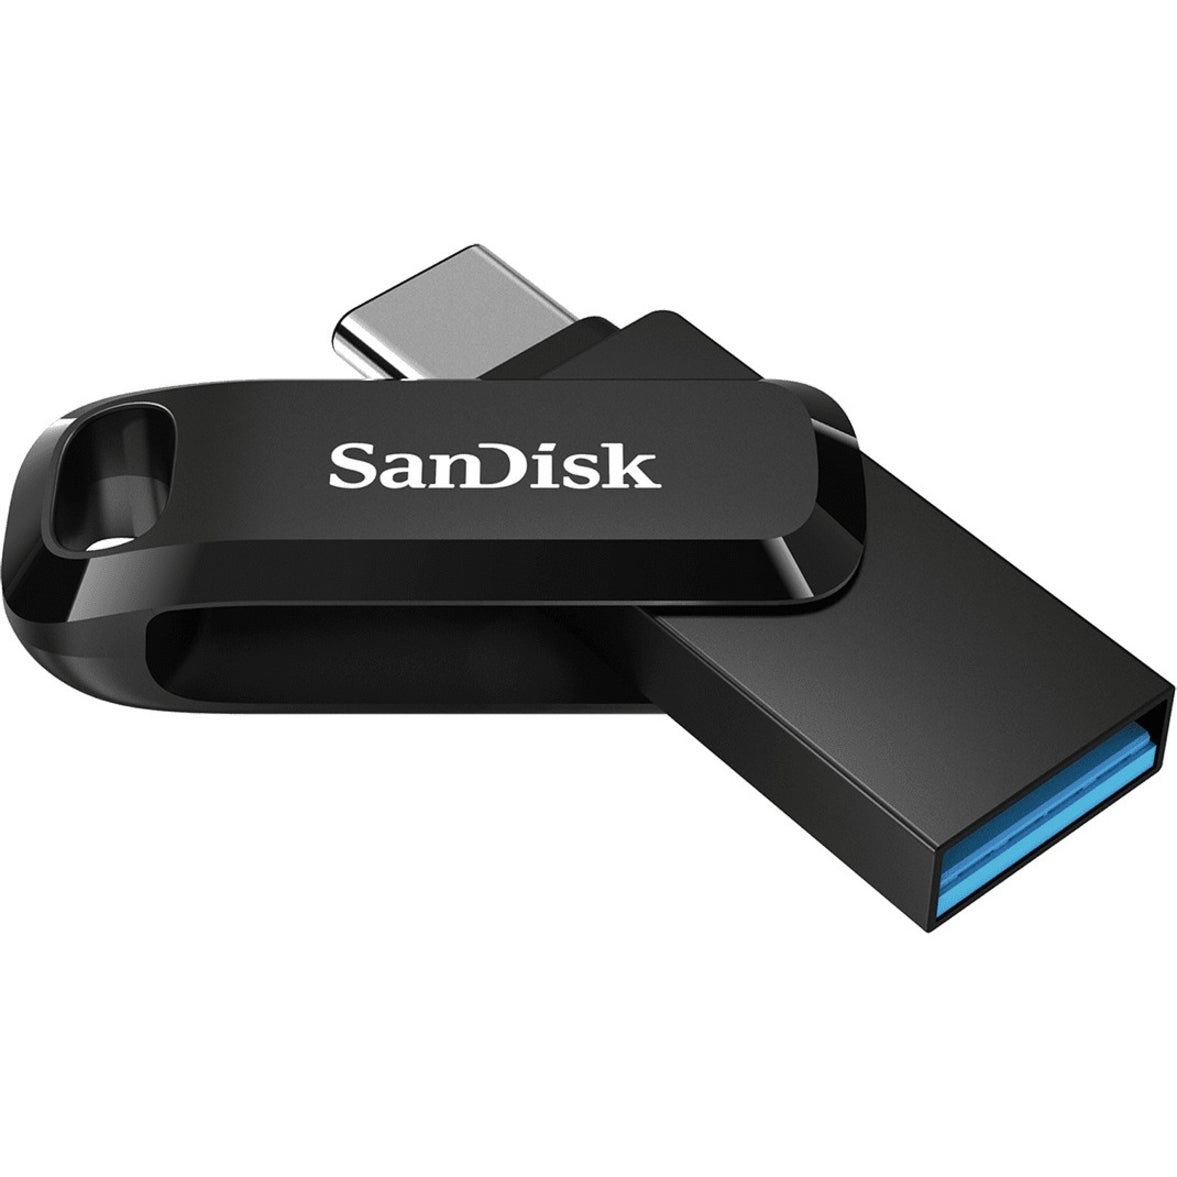 SanDisk SDDDC3-032G-A46 Ultra Dual Drive Go USB Tipo C 32GB Velocidades de Transferencia Rápidas Copia de Seguridad de Archivos Fácil Marca: SanDisk